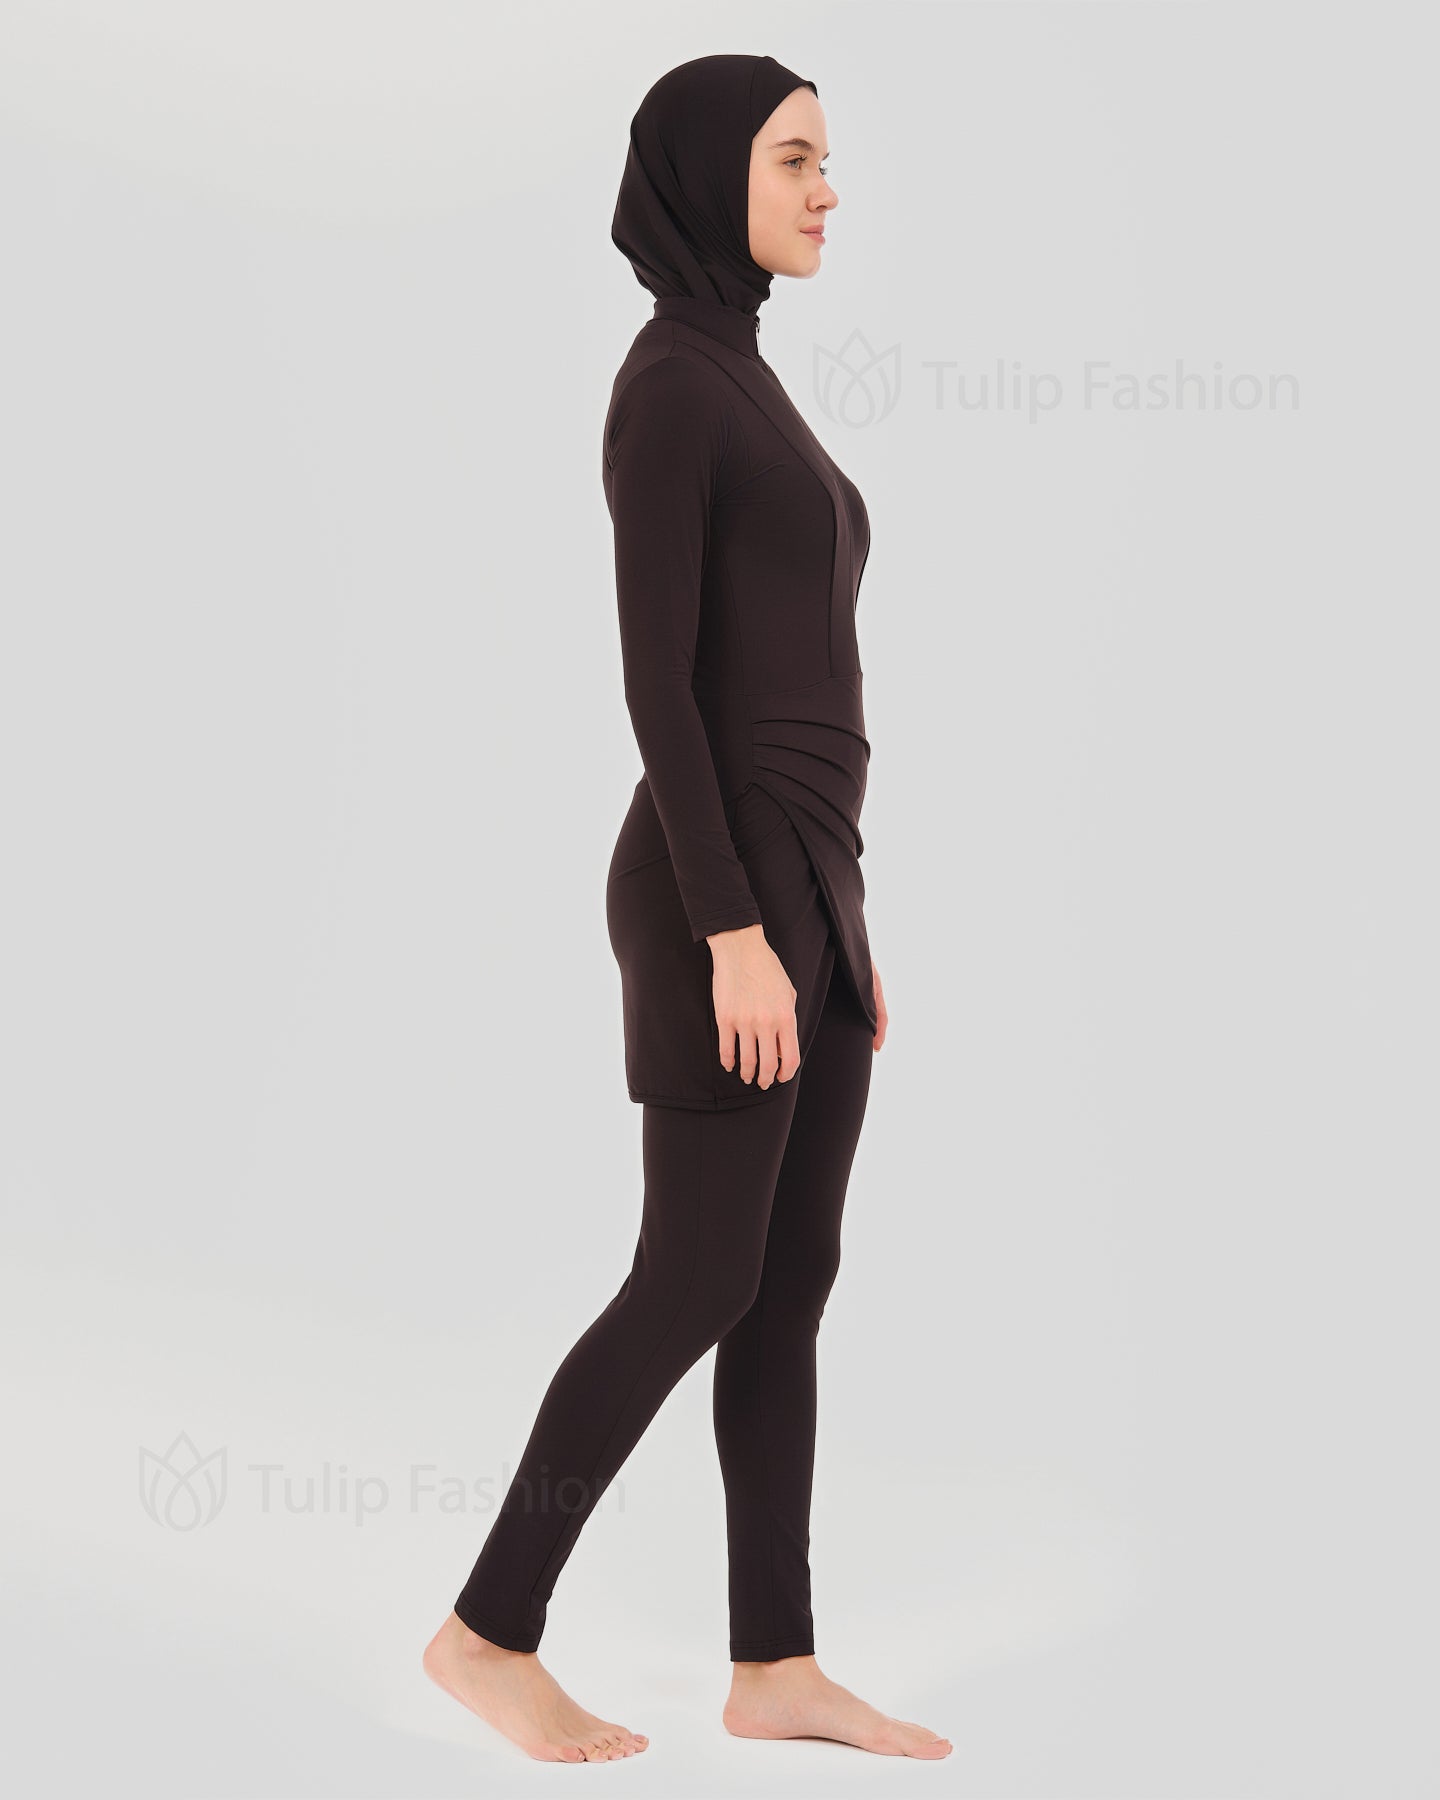 Muslim Swimsuit with hijab - Black